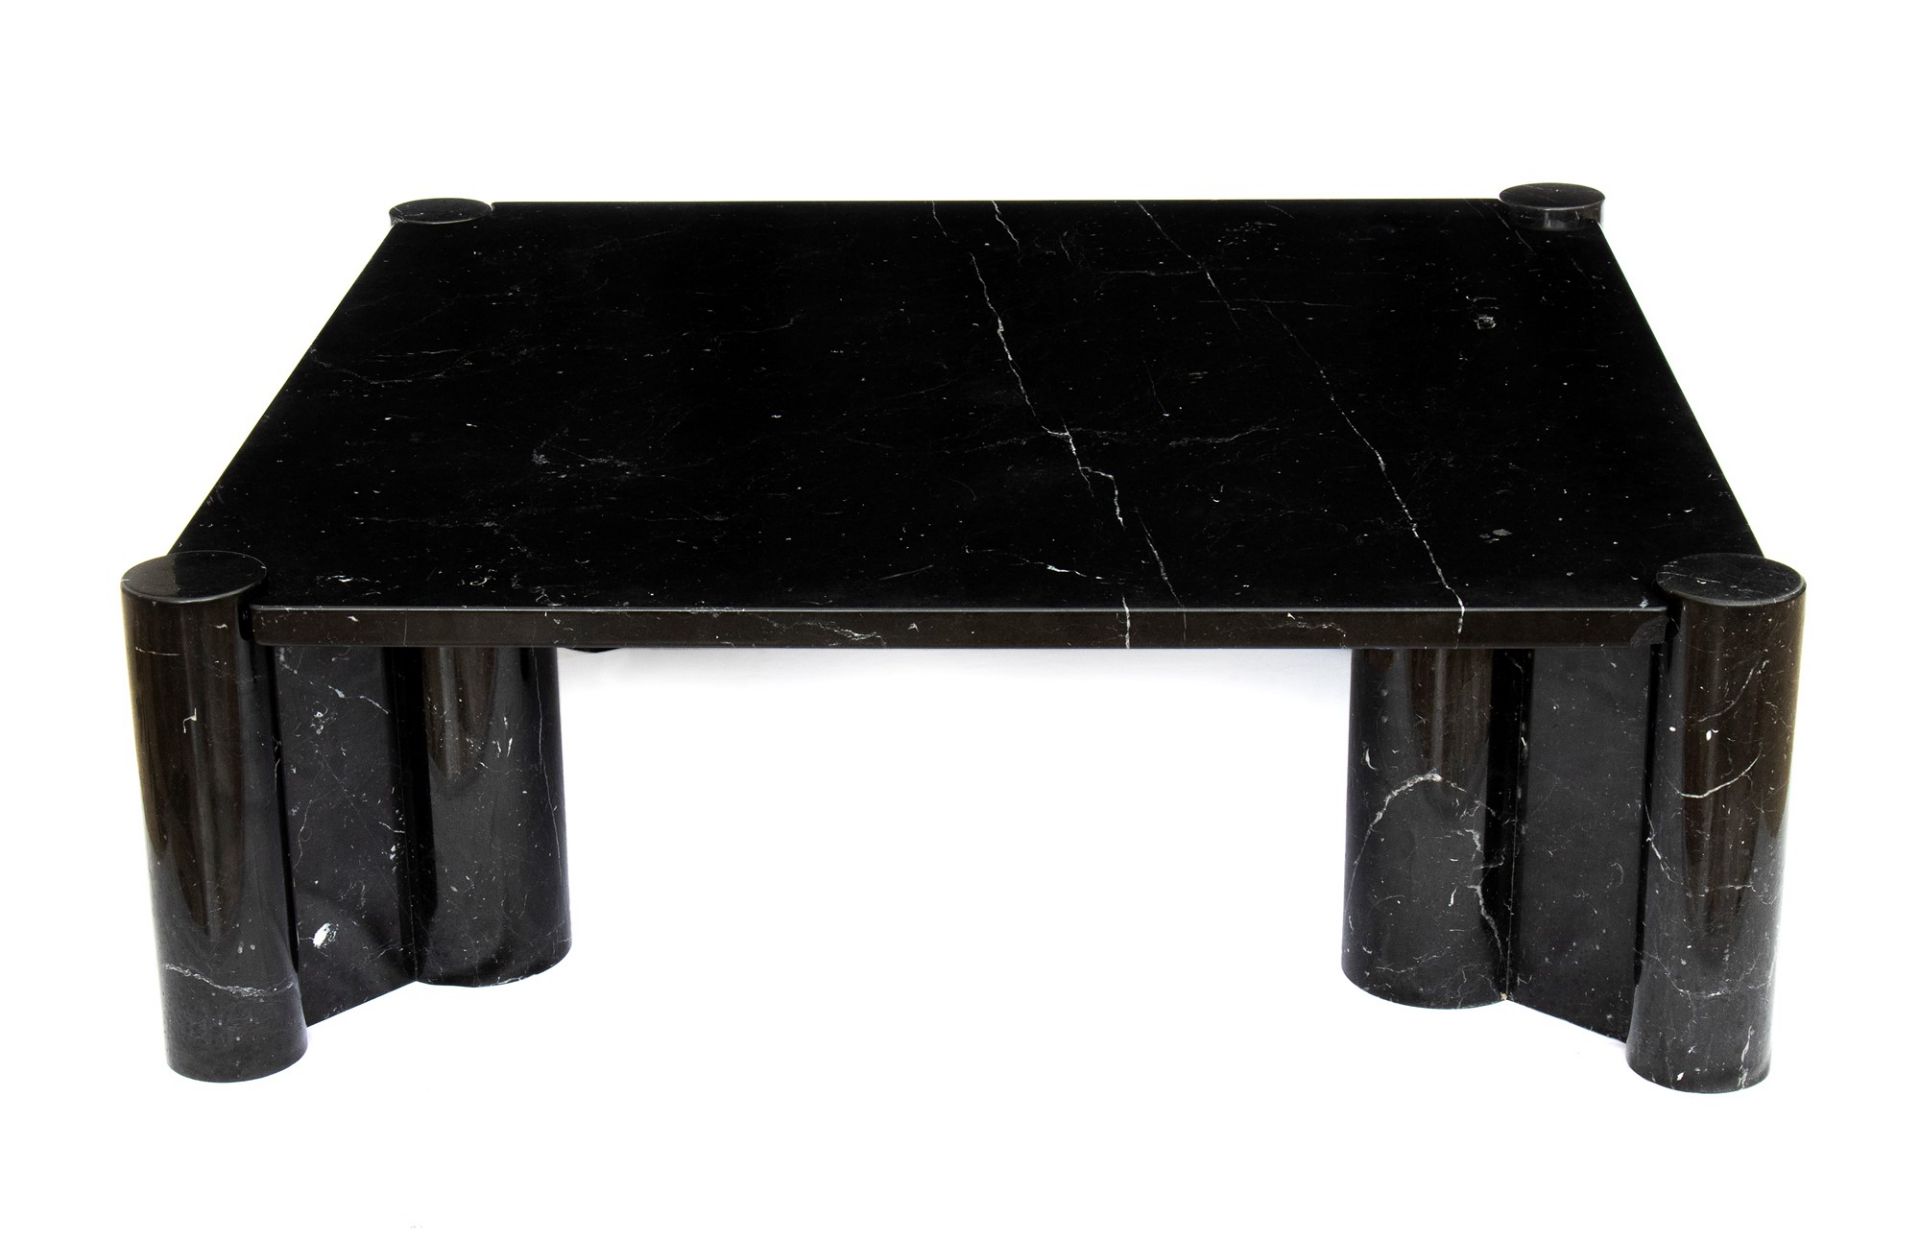 Gae Aulenti Palazzolo dello Stella 1927-Milano 2012 Living room table in black marble marquinia mod